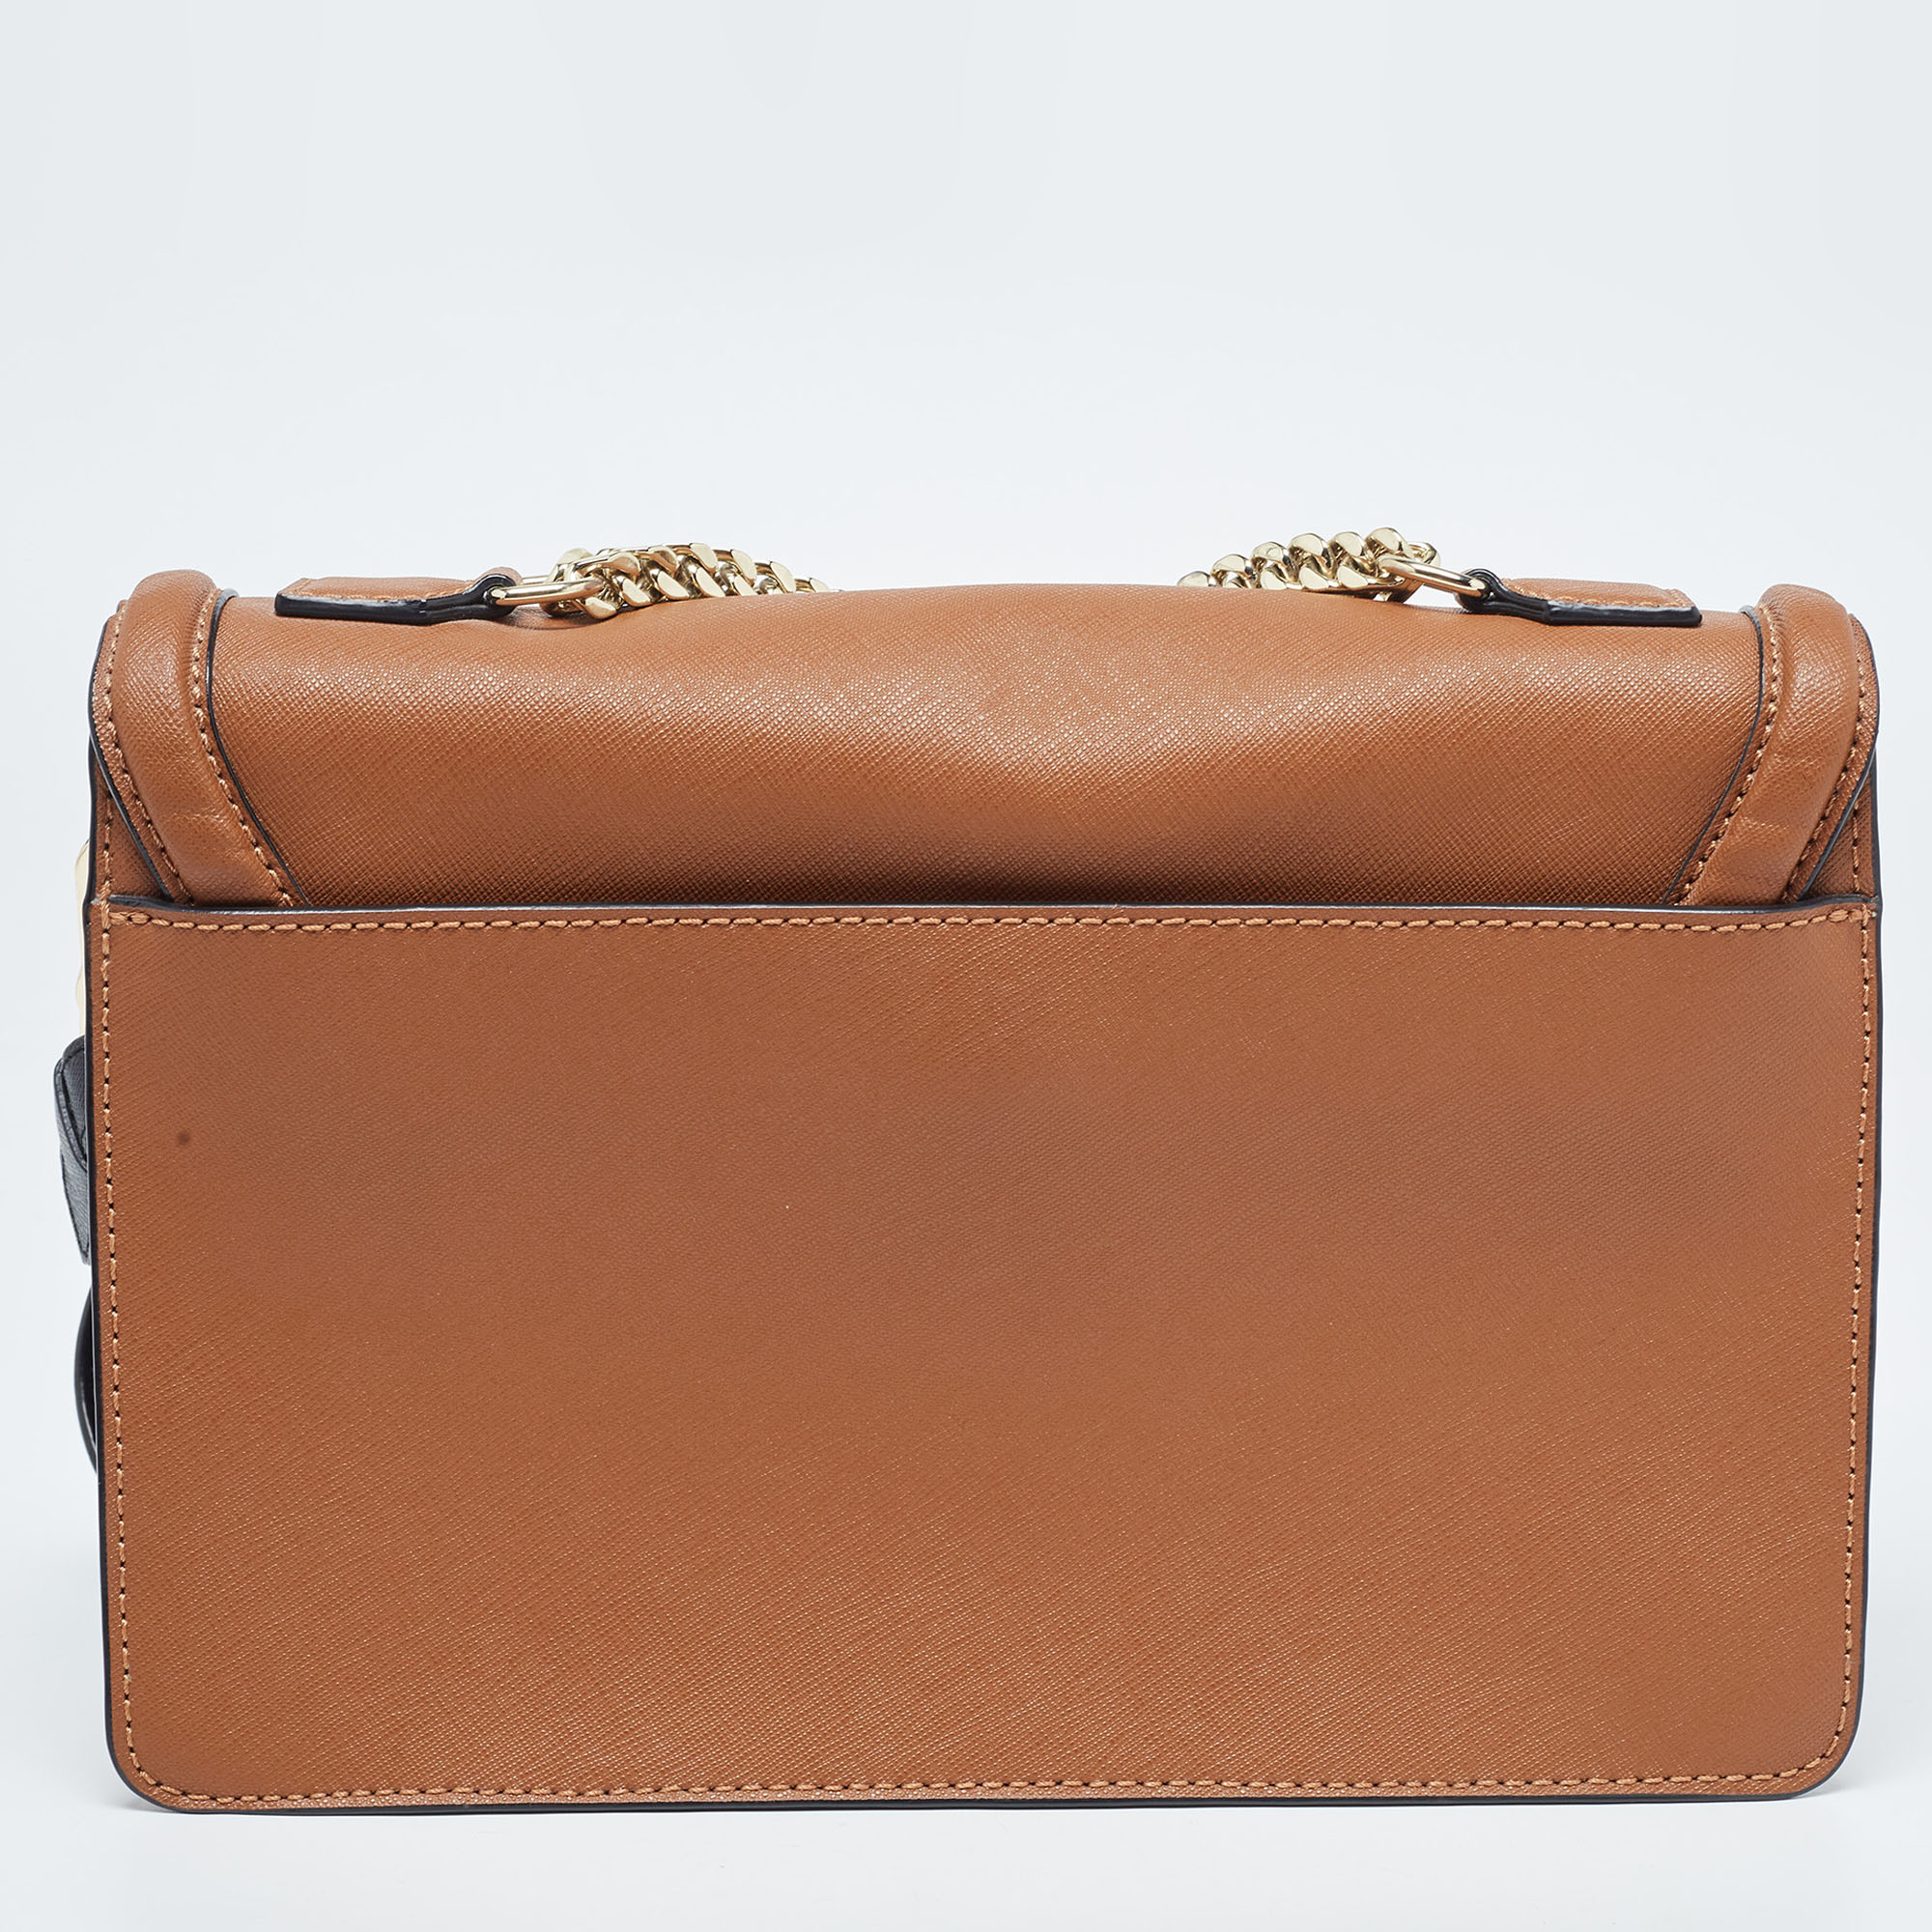 Karl Lagerfeld Brown Leather K/Klassik Shoulder Bag